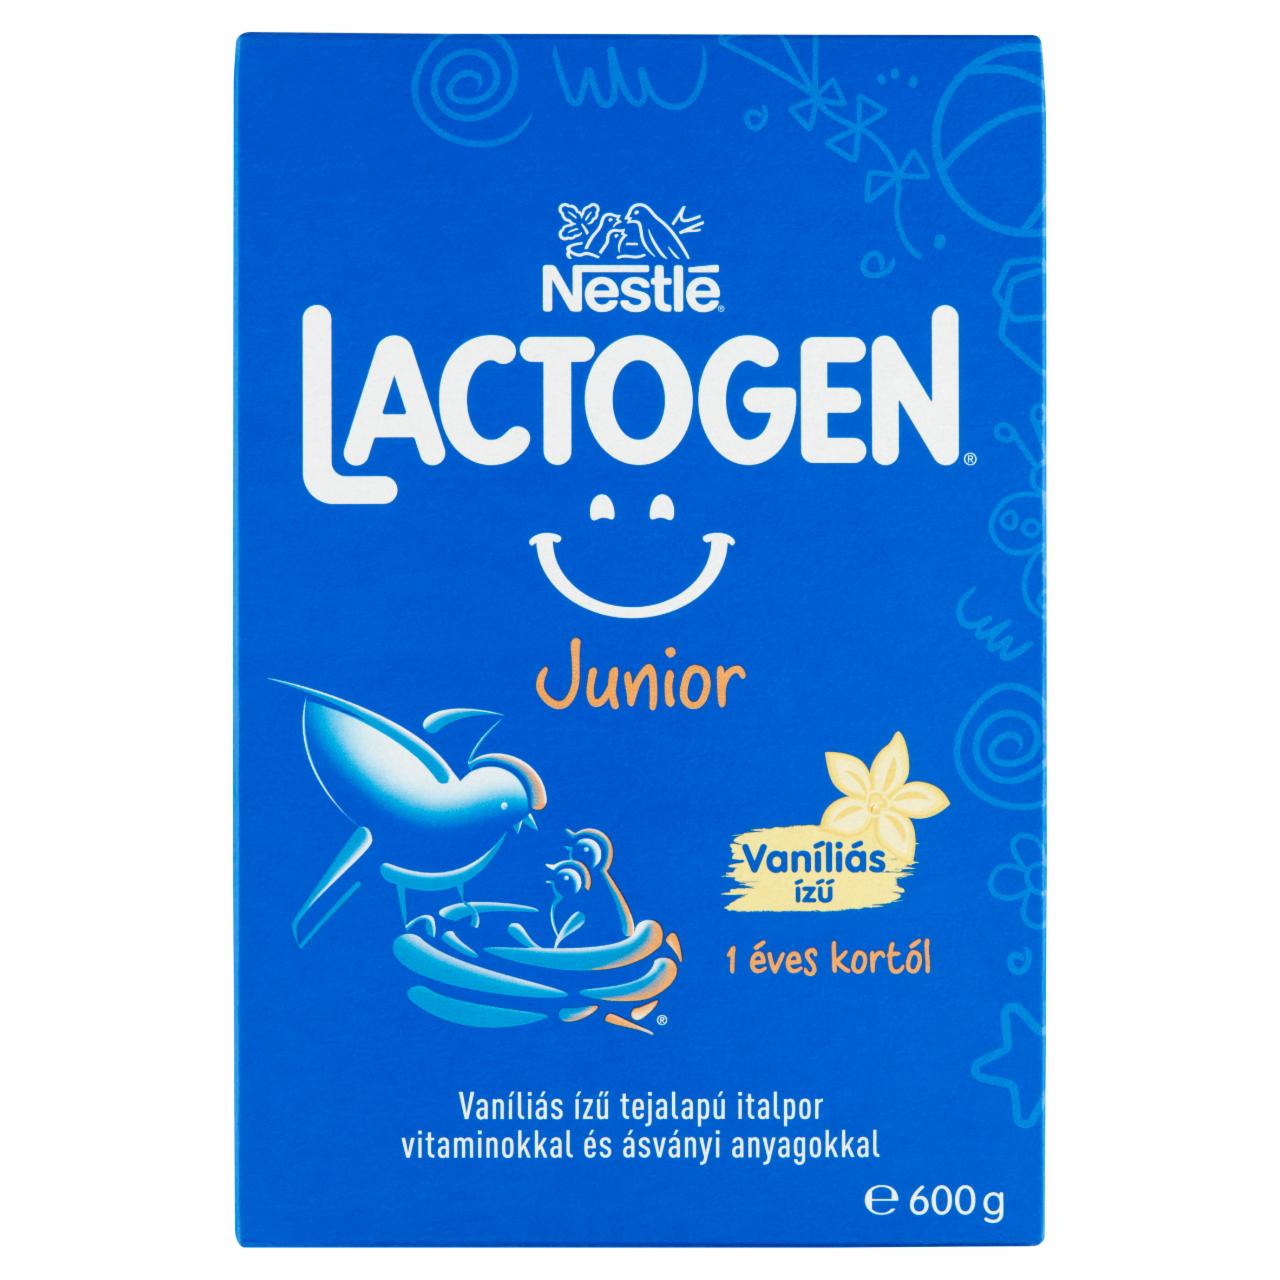 Képek - Nestlé Lactogen Junior vaníliás ízű tejalapú italpor 1 éves kortól 2 x 300 g (600 g)